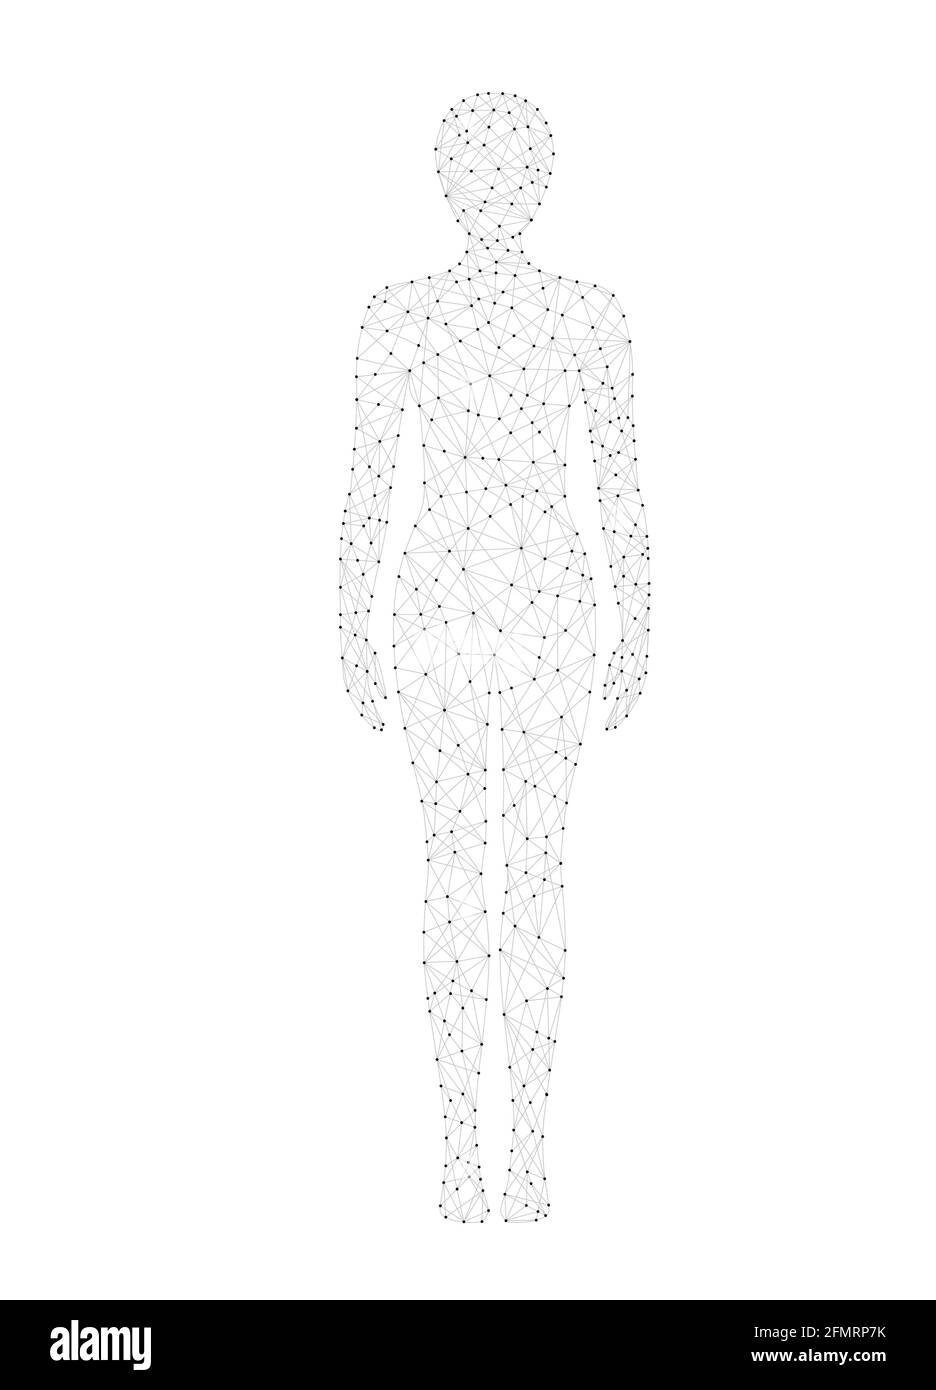 Abbildung des Vektorgrafiks für den Körper einer Frau mit niedrigem Poly-Drahtmodell. Medizin, Wissenschaft und Technologie Konzept. Stock Vektor